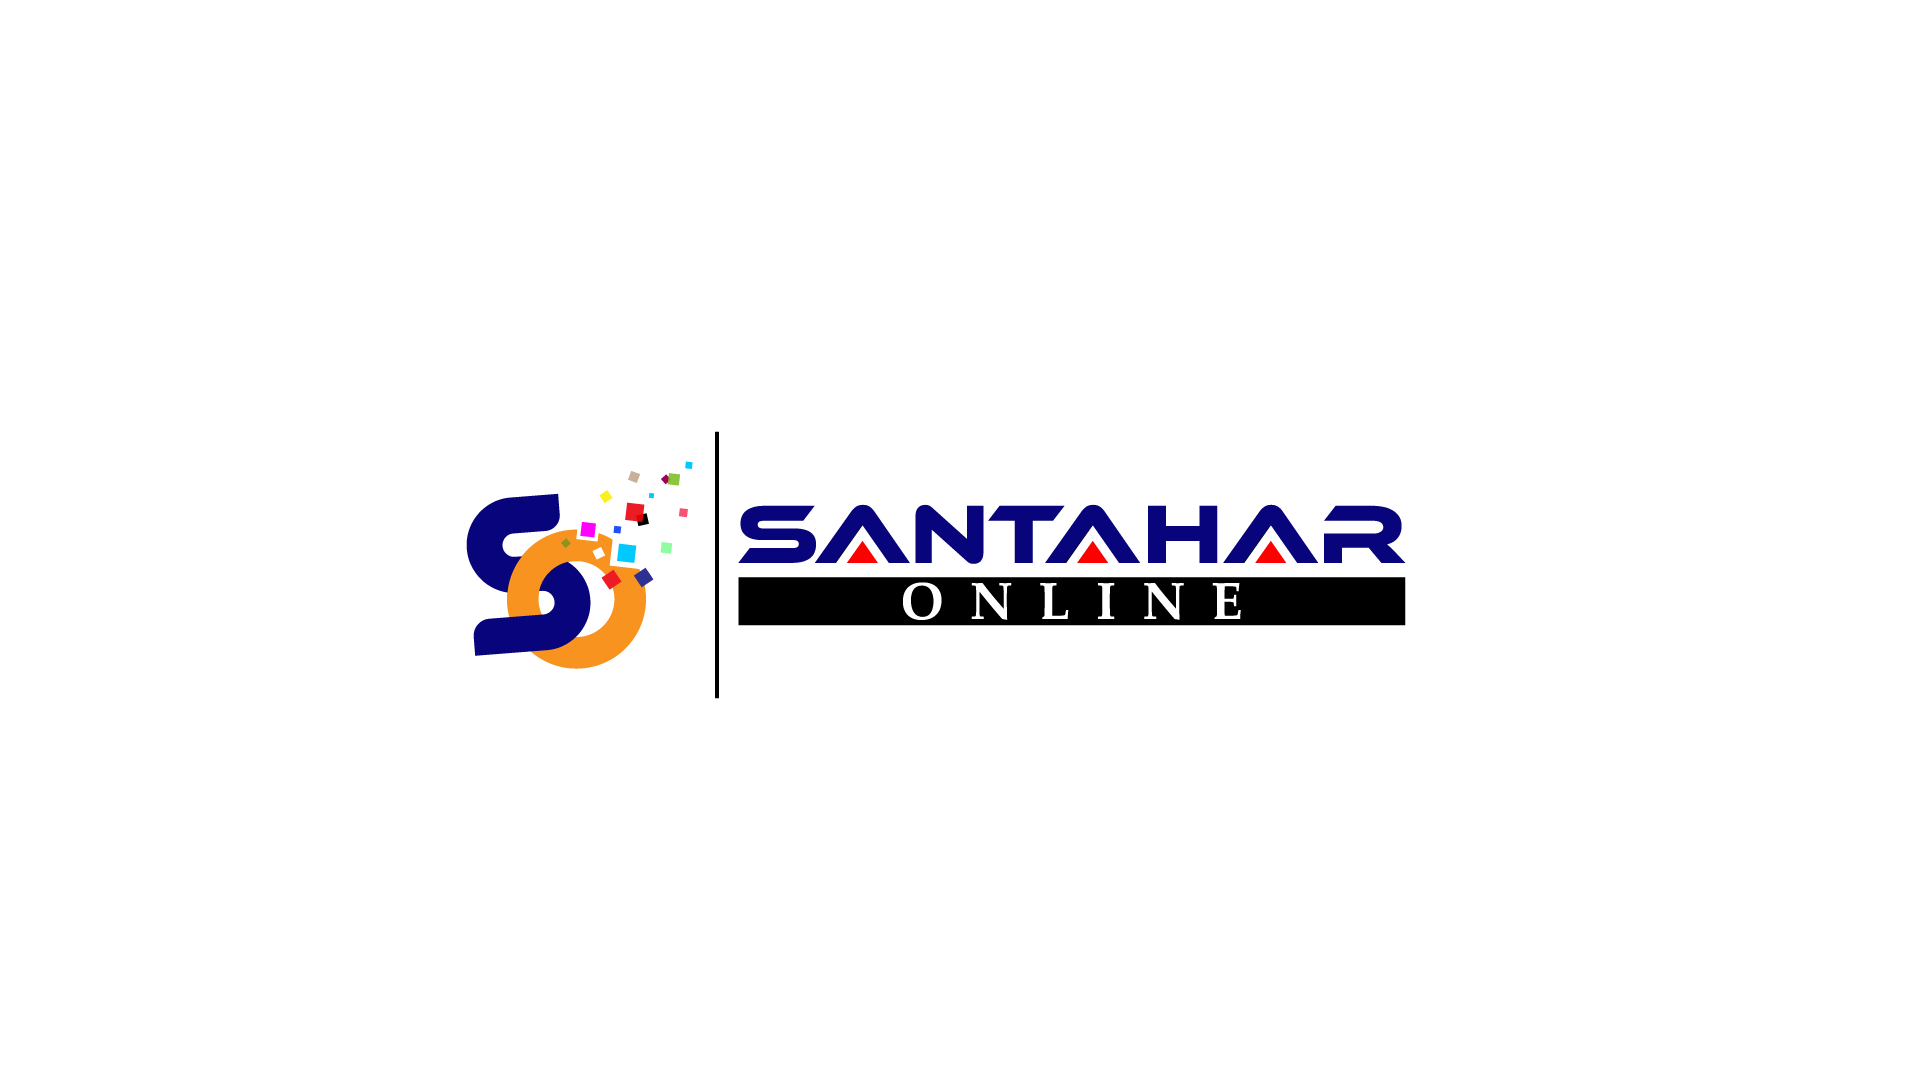  Santahar Online-logo